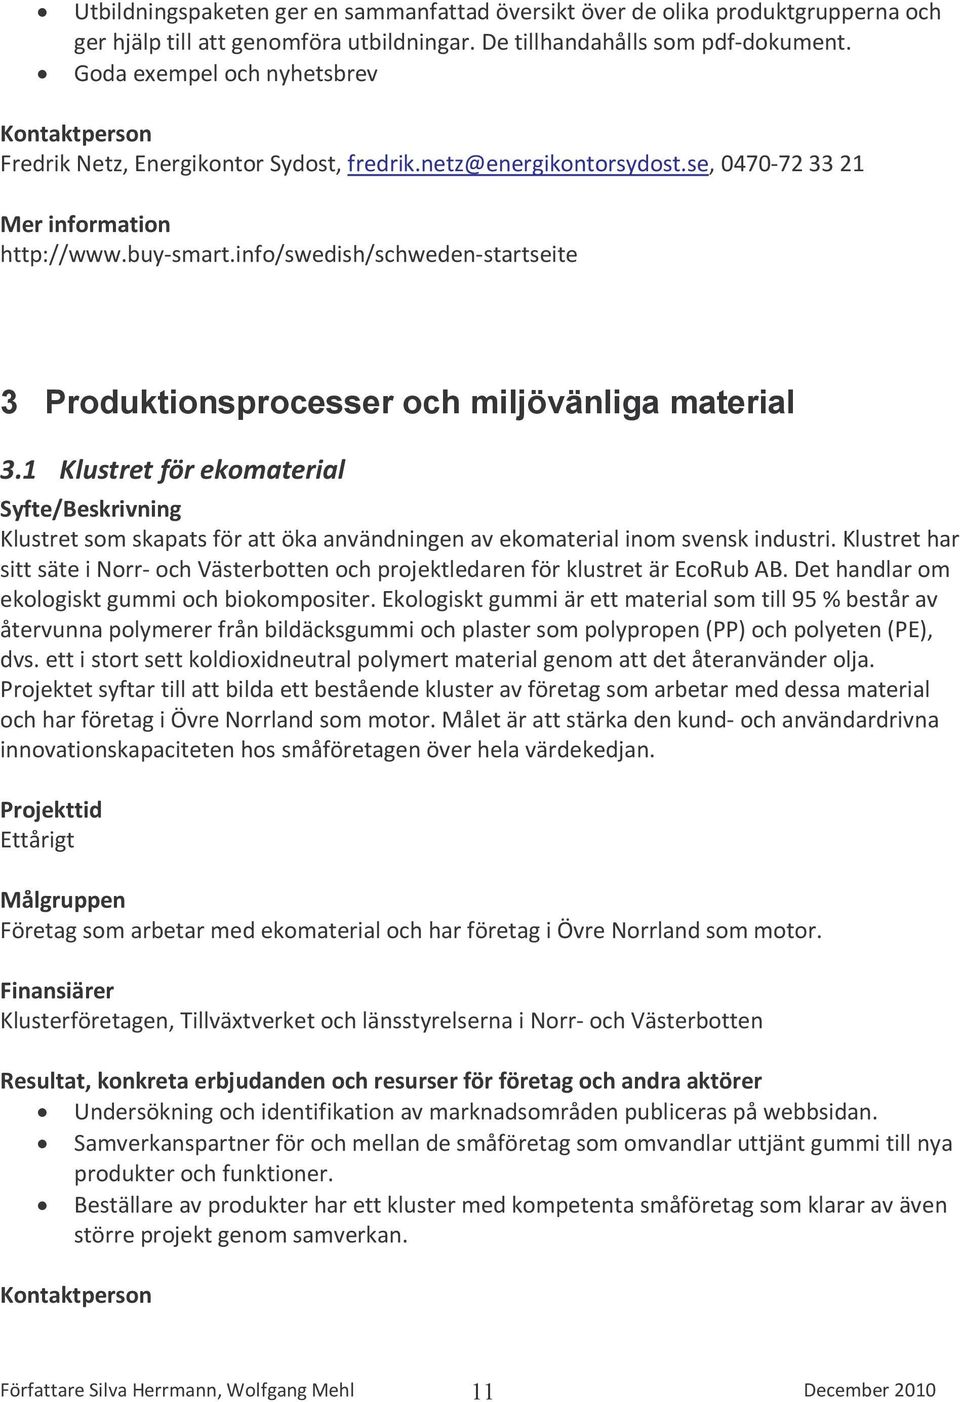 info/swedish/schweden-startseite 3 Produktionsprocesser och miljövänliga material 3.1 Klustret för ekomaterial Klustret som skapats för att öka användningen av ekomaterial inom svensk industri.